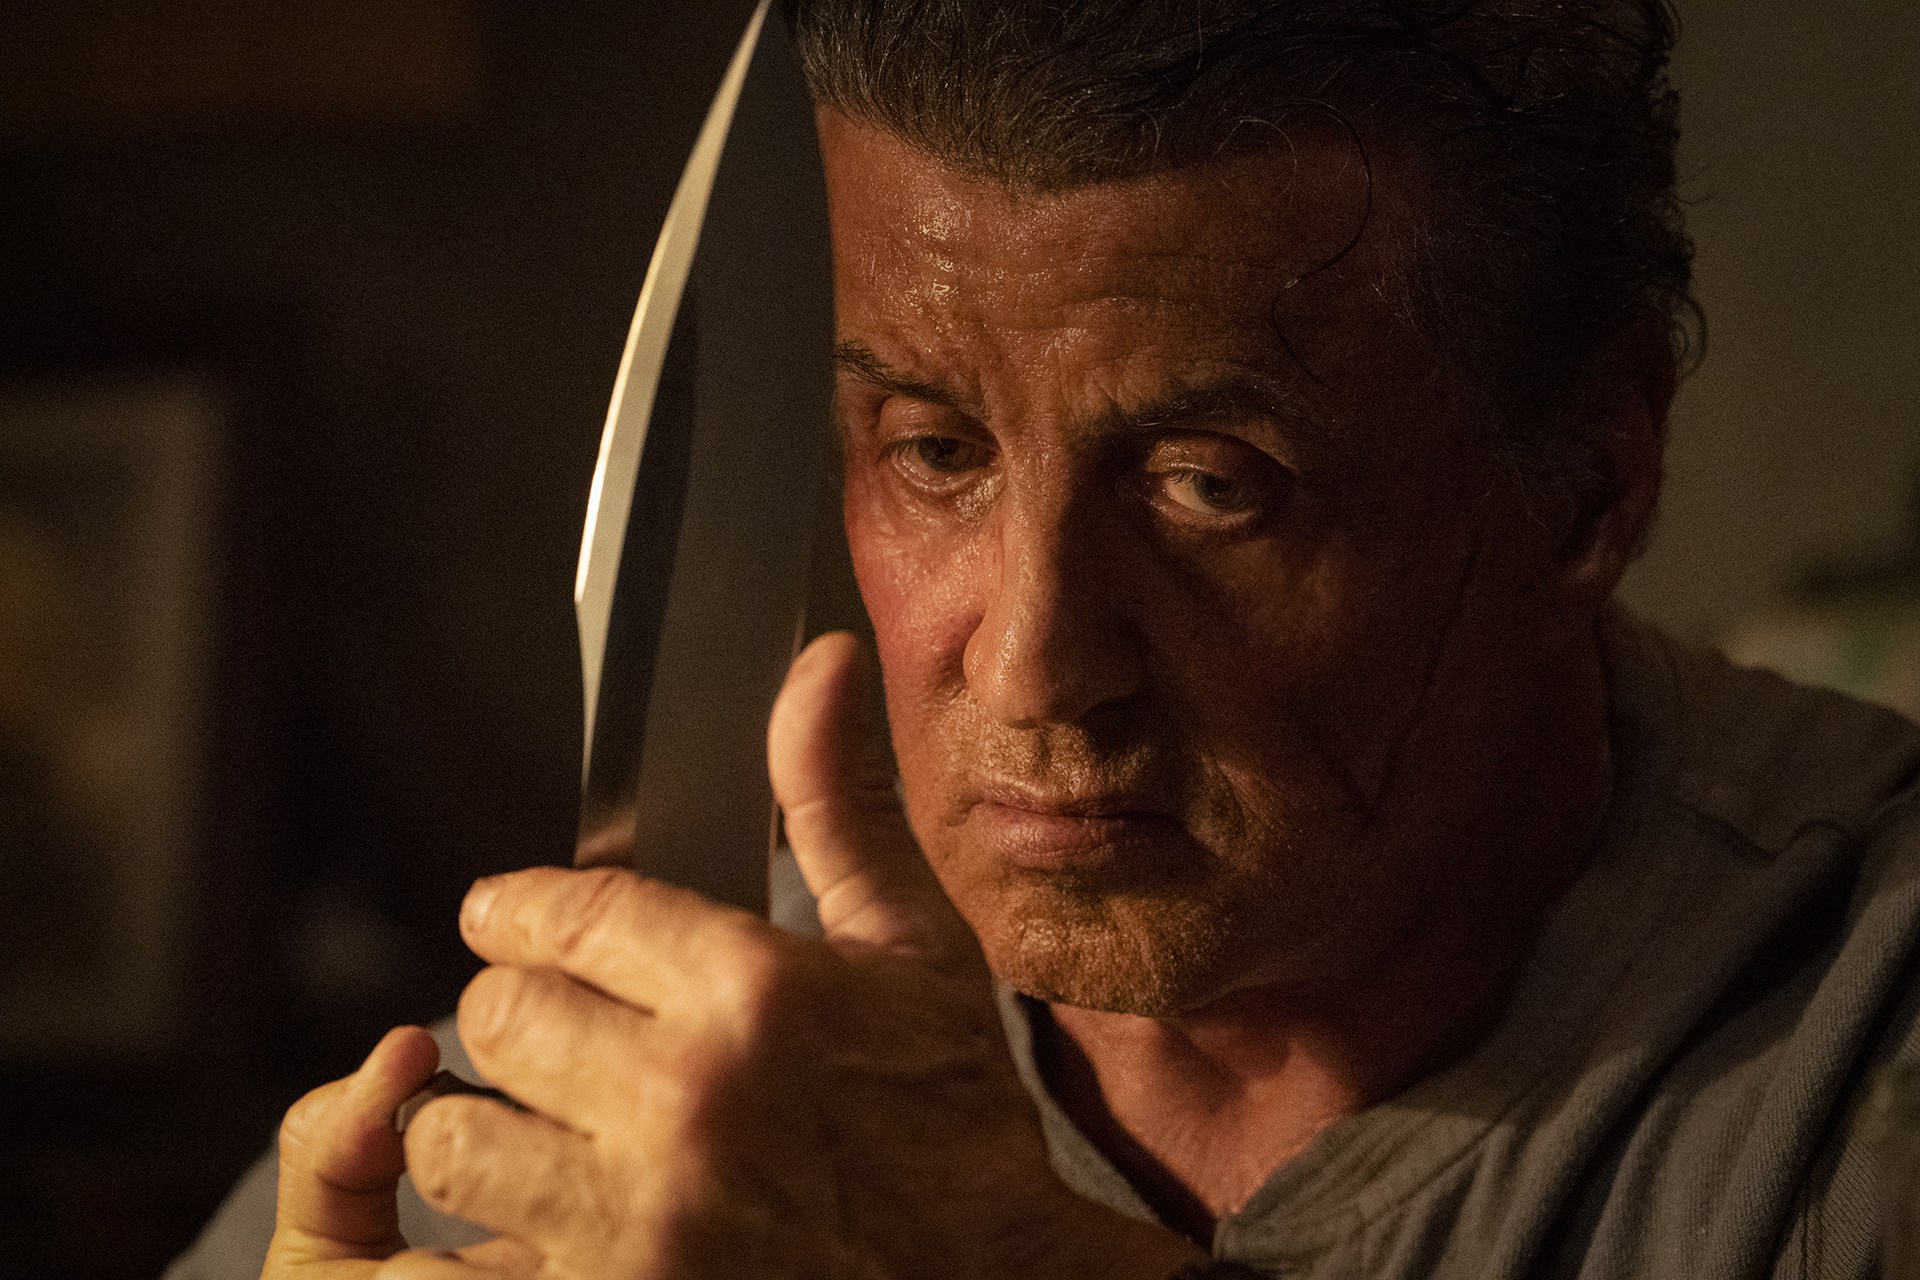 Rambo 5: Destino de personagem de Stallone enfim é revelado